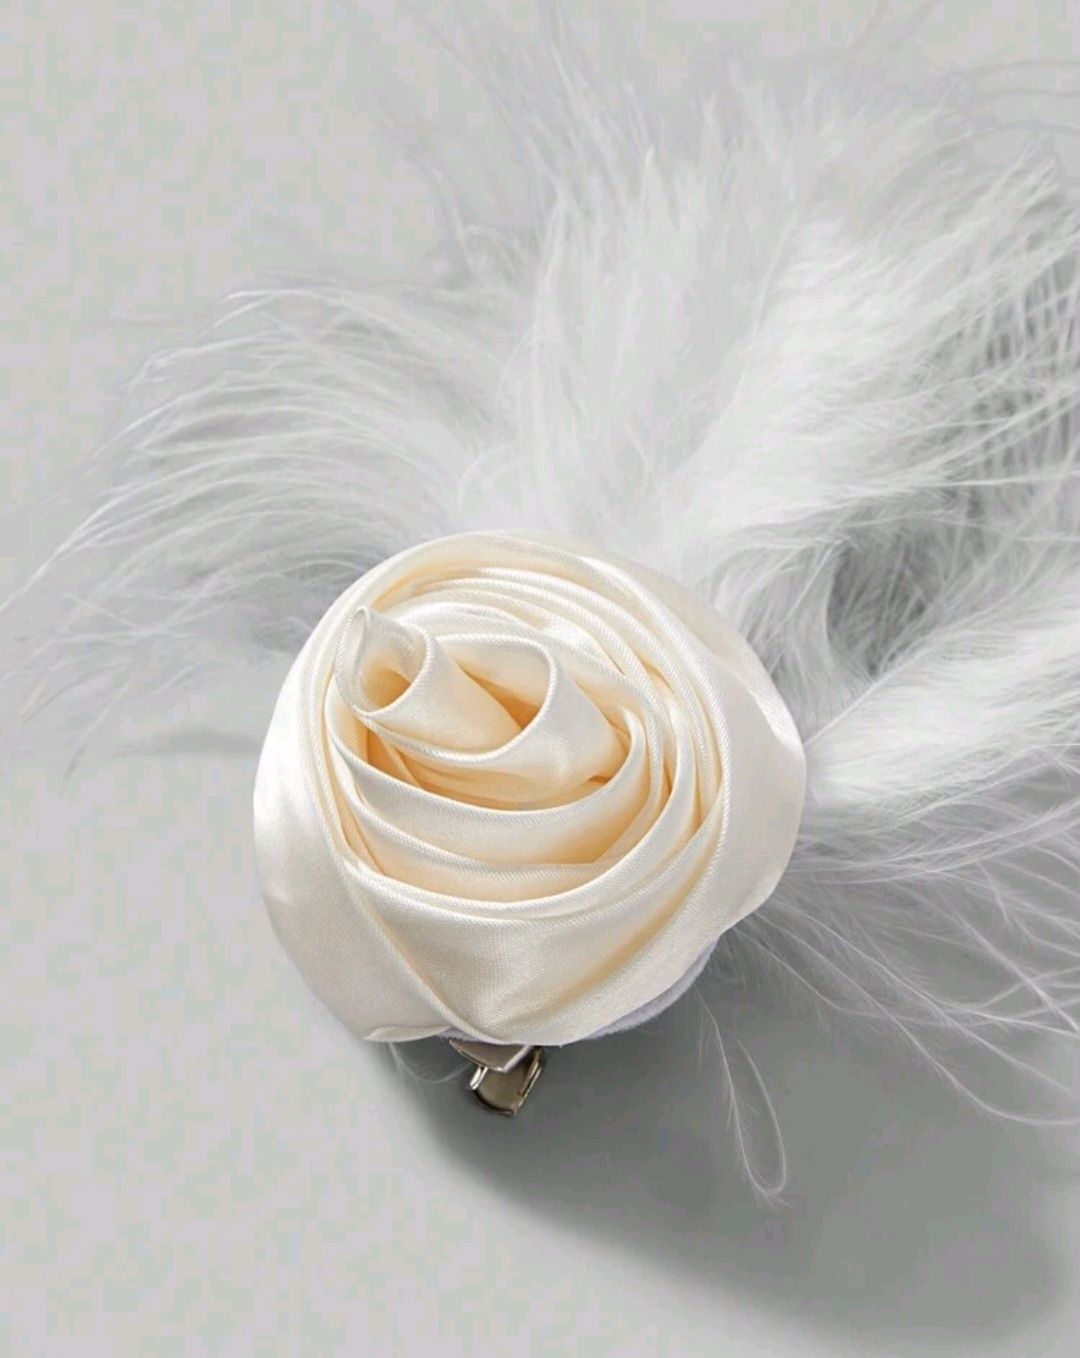 Broszka przypinka róża ecri z białymi piórkami